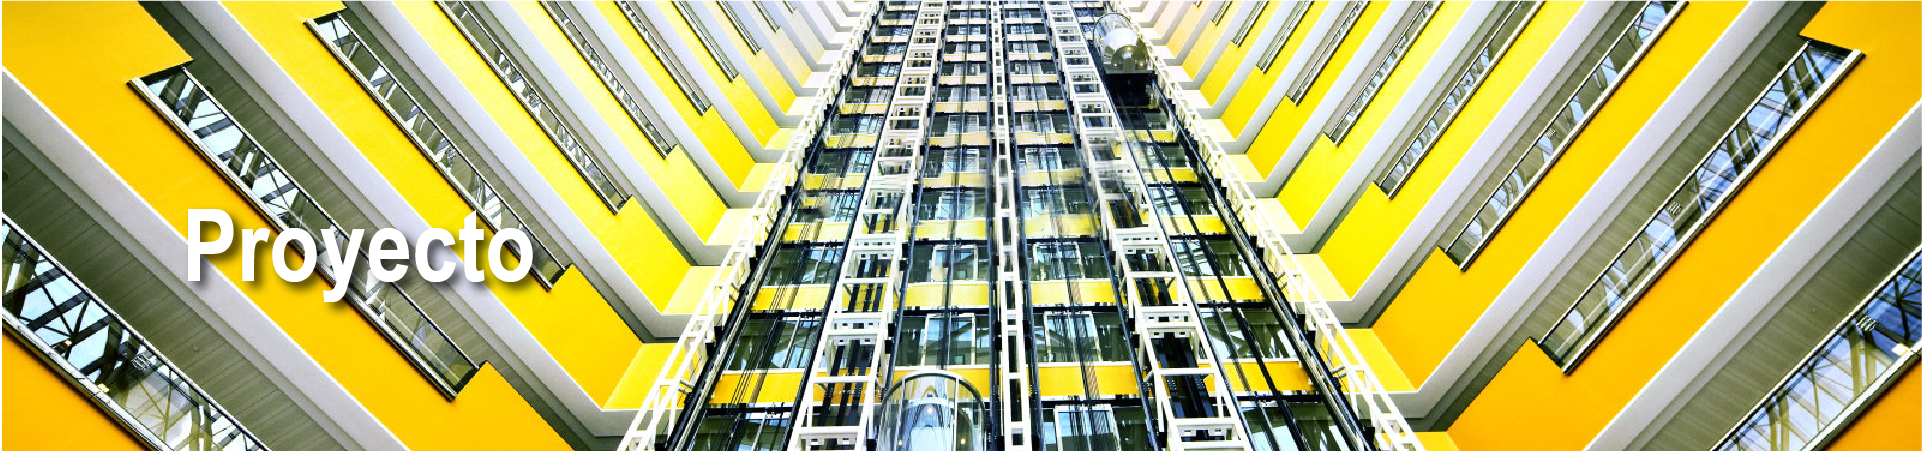 Sitio web oficial de Fuji Elevator, un fabricante profesional mundial de elevadores inteligentes de alta gama personalizados.